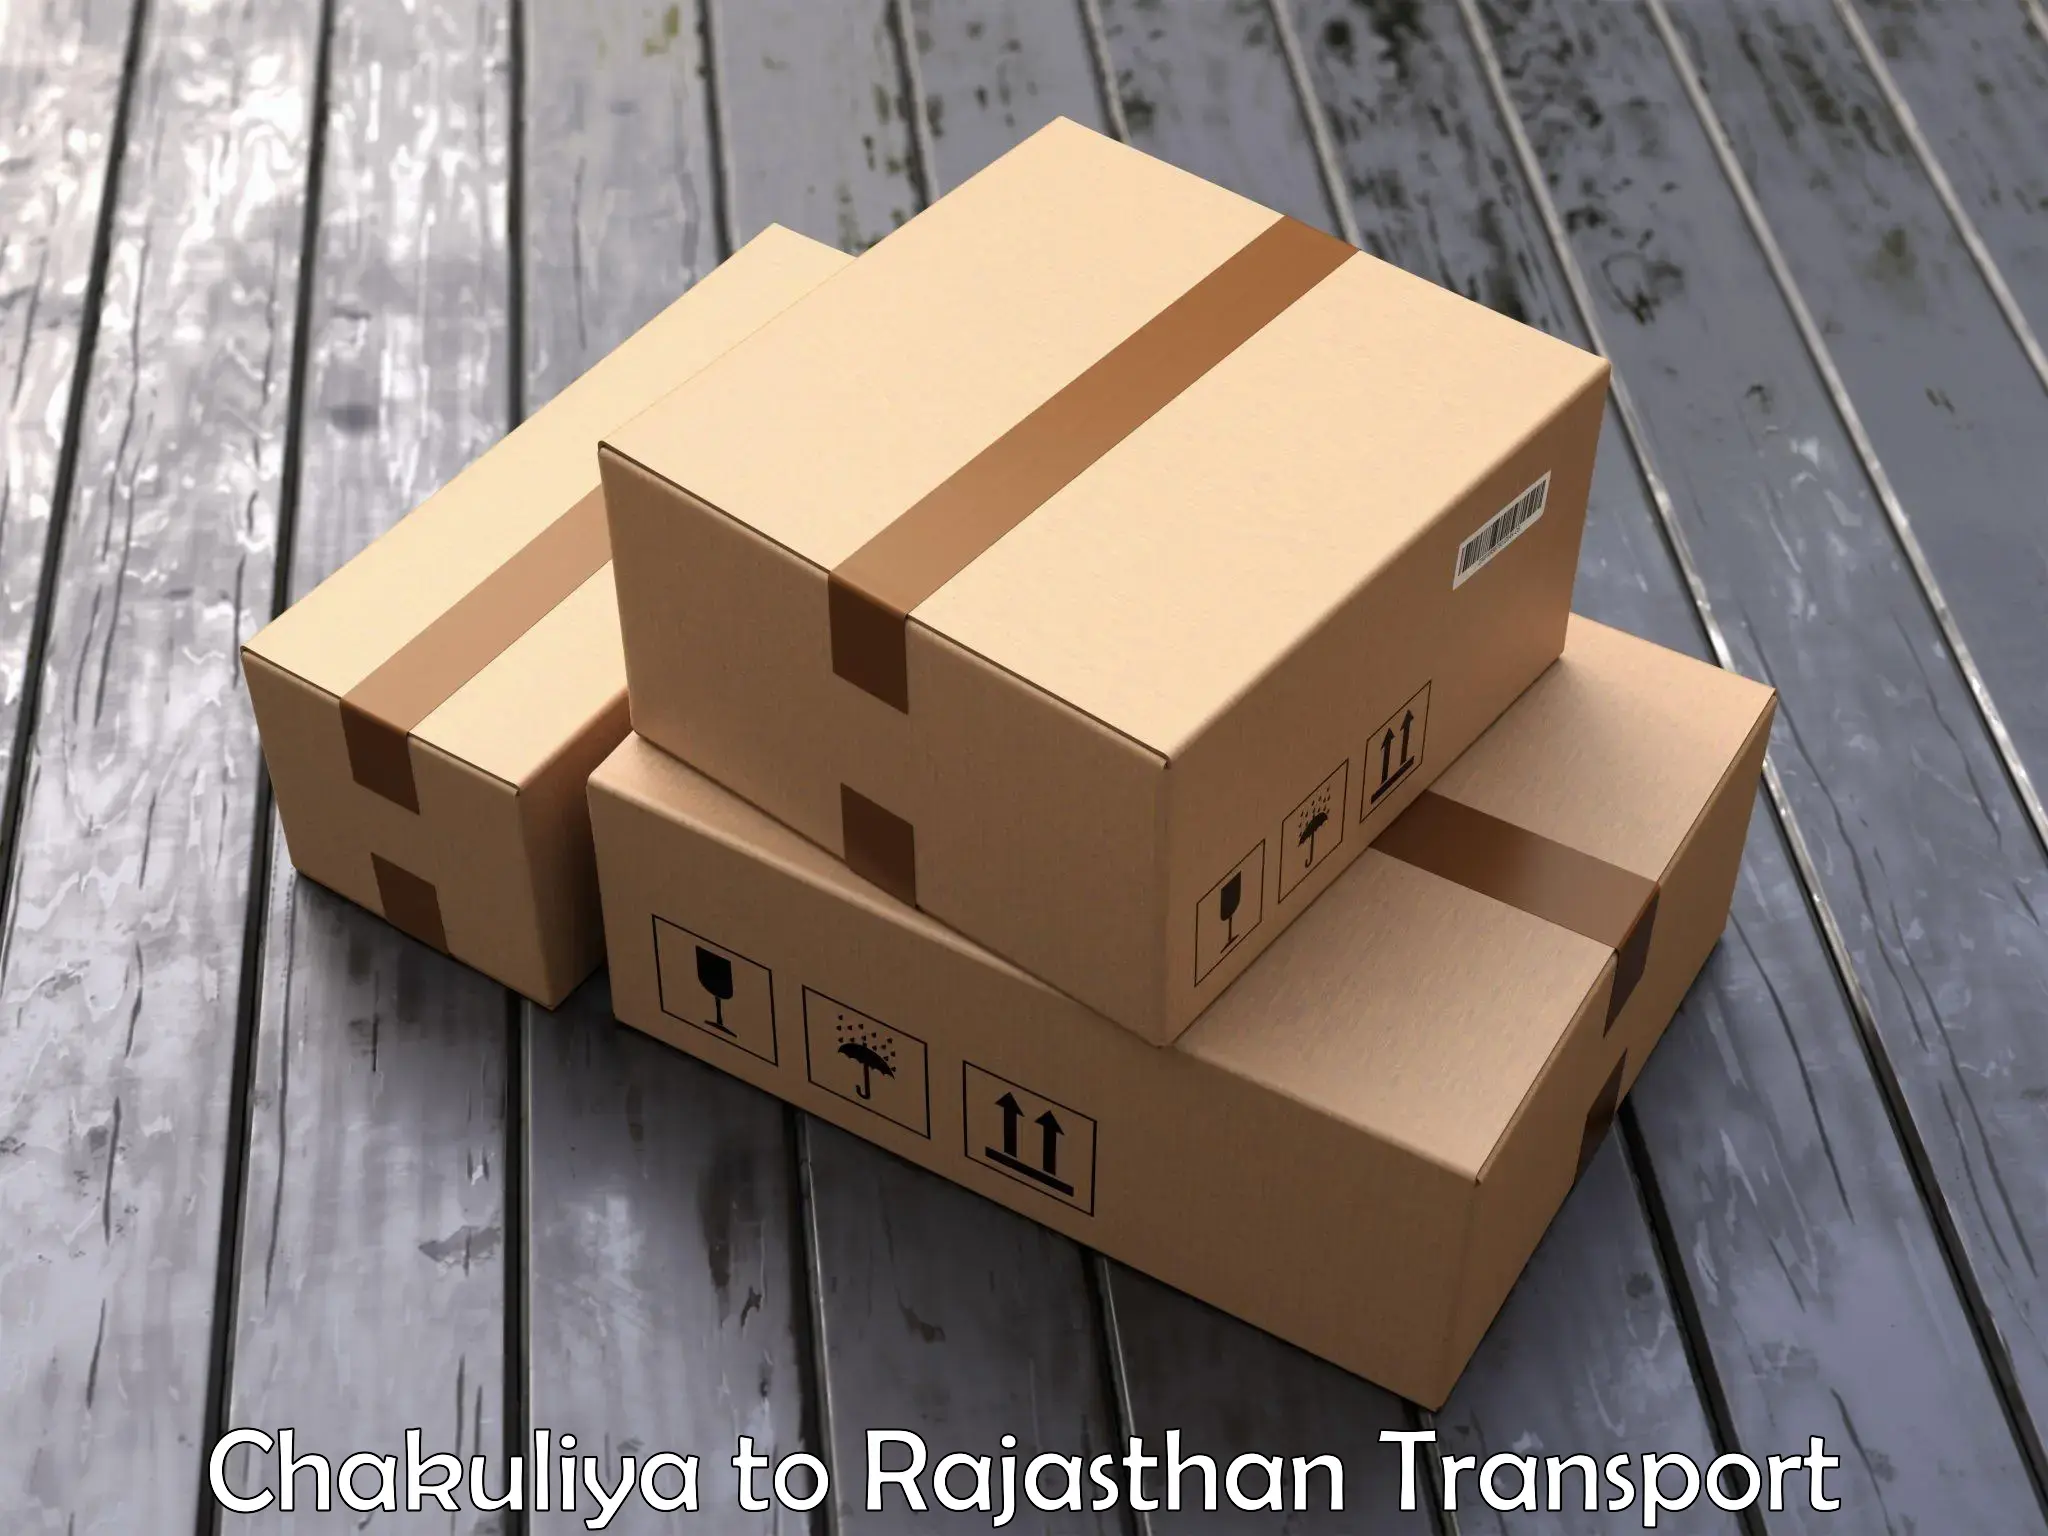 Air freight transport services Chakuliya to Rajsamand